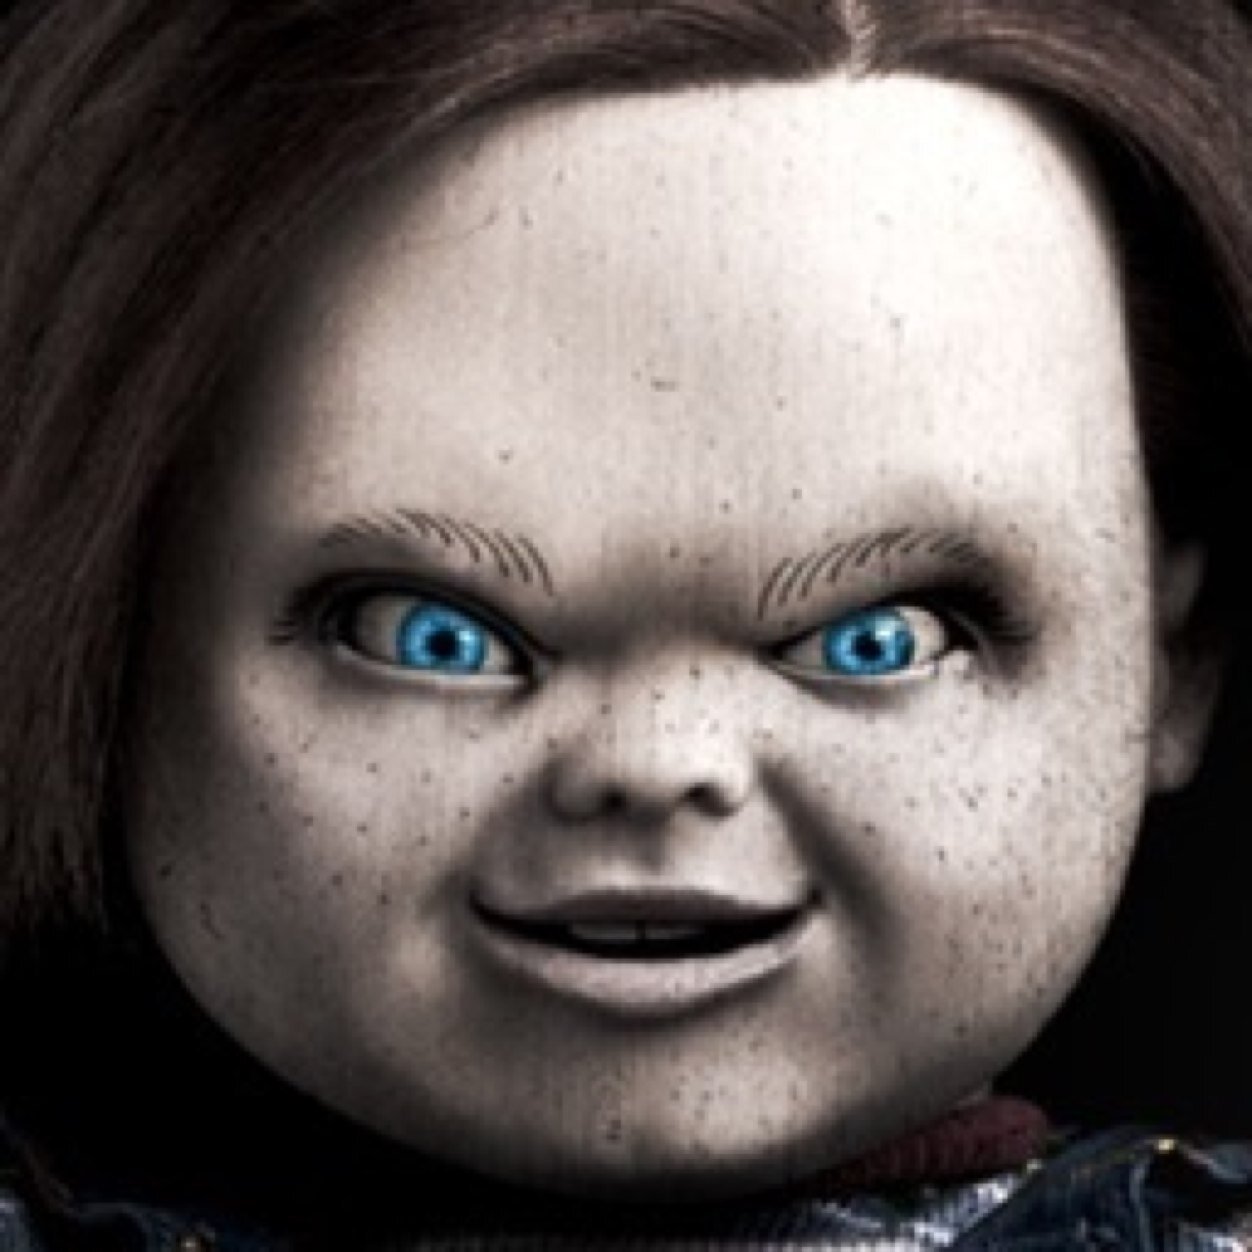 My friends call me Chucky #Single #Rp #Chucky